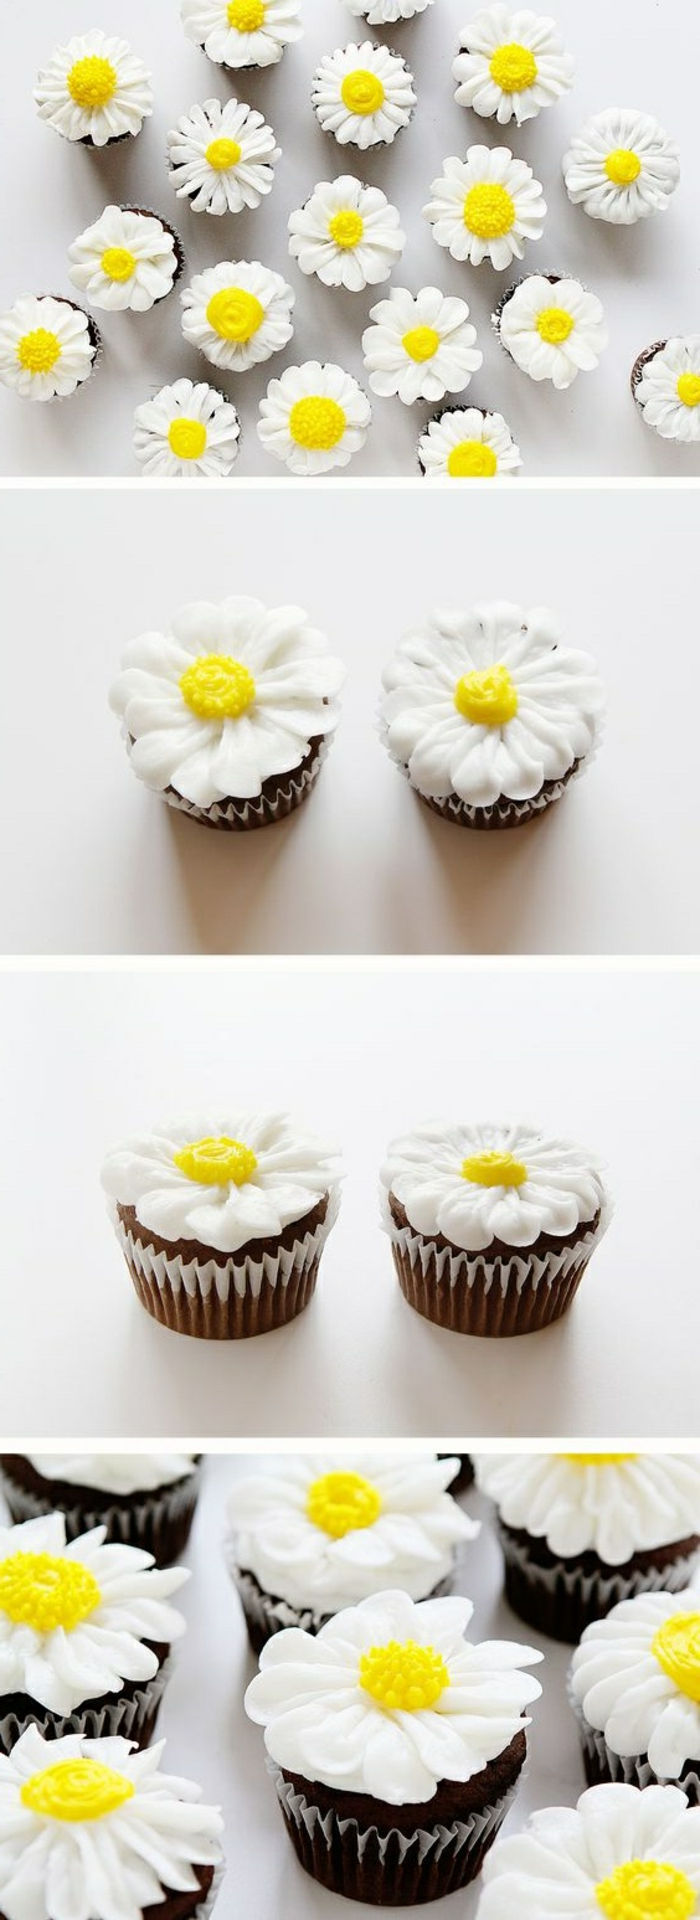 çikolatalı kekler beyaz kaz çiçekleri ile dekore edilmiştir.